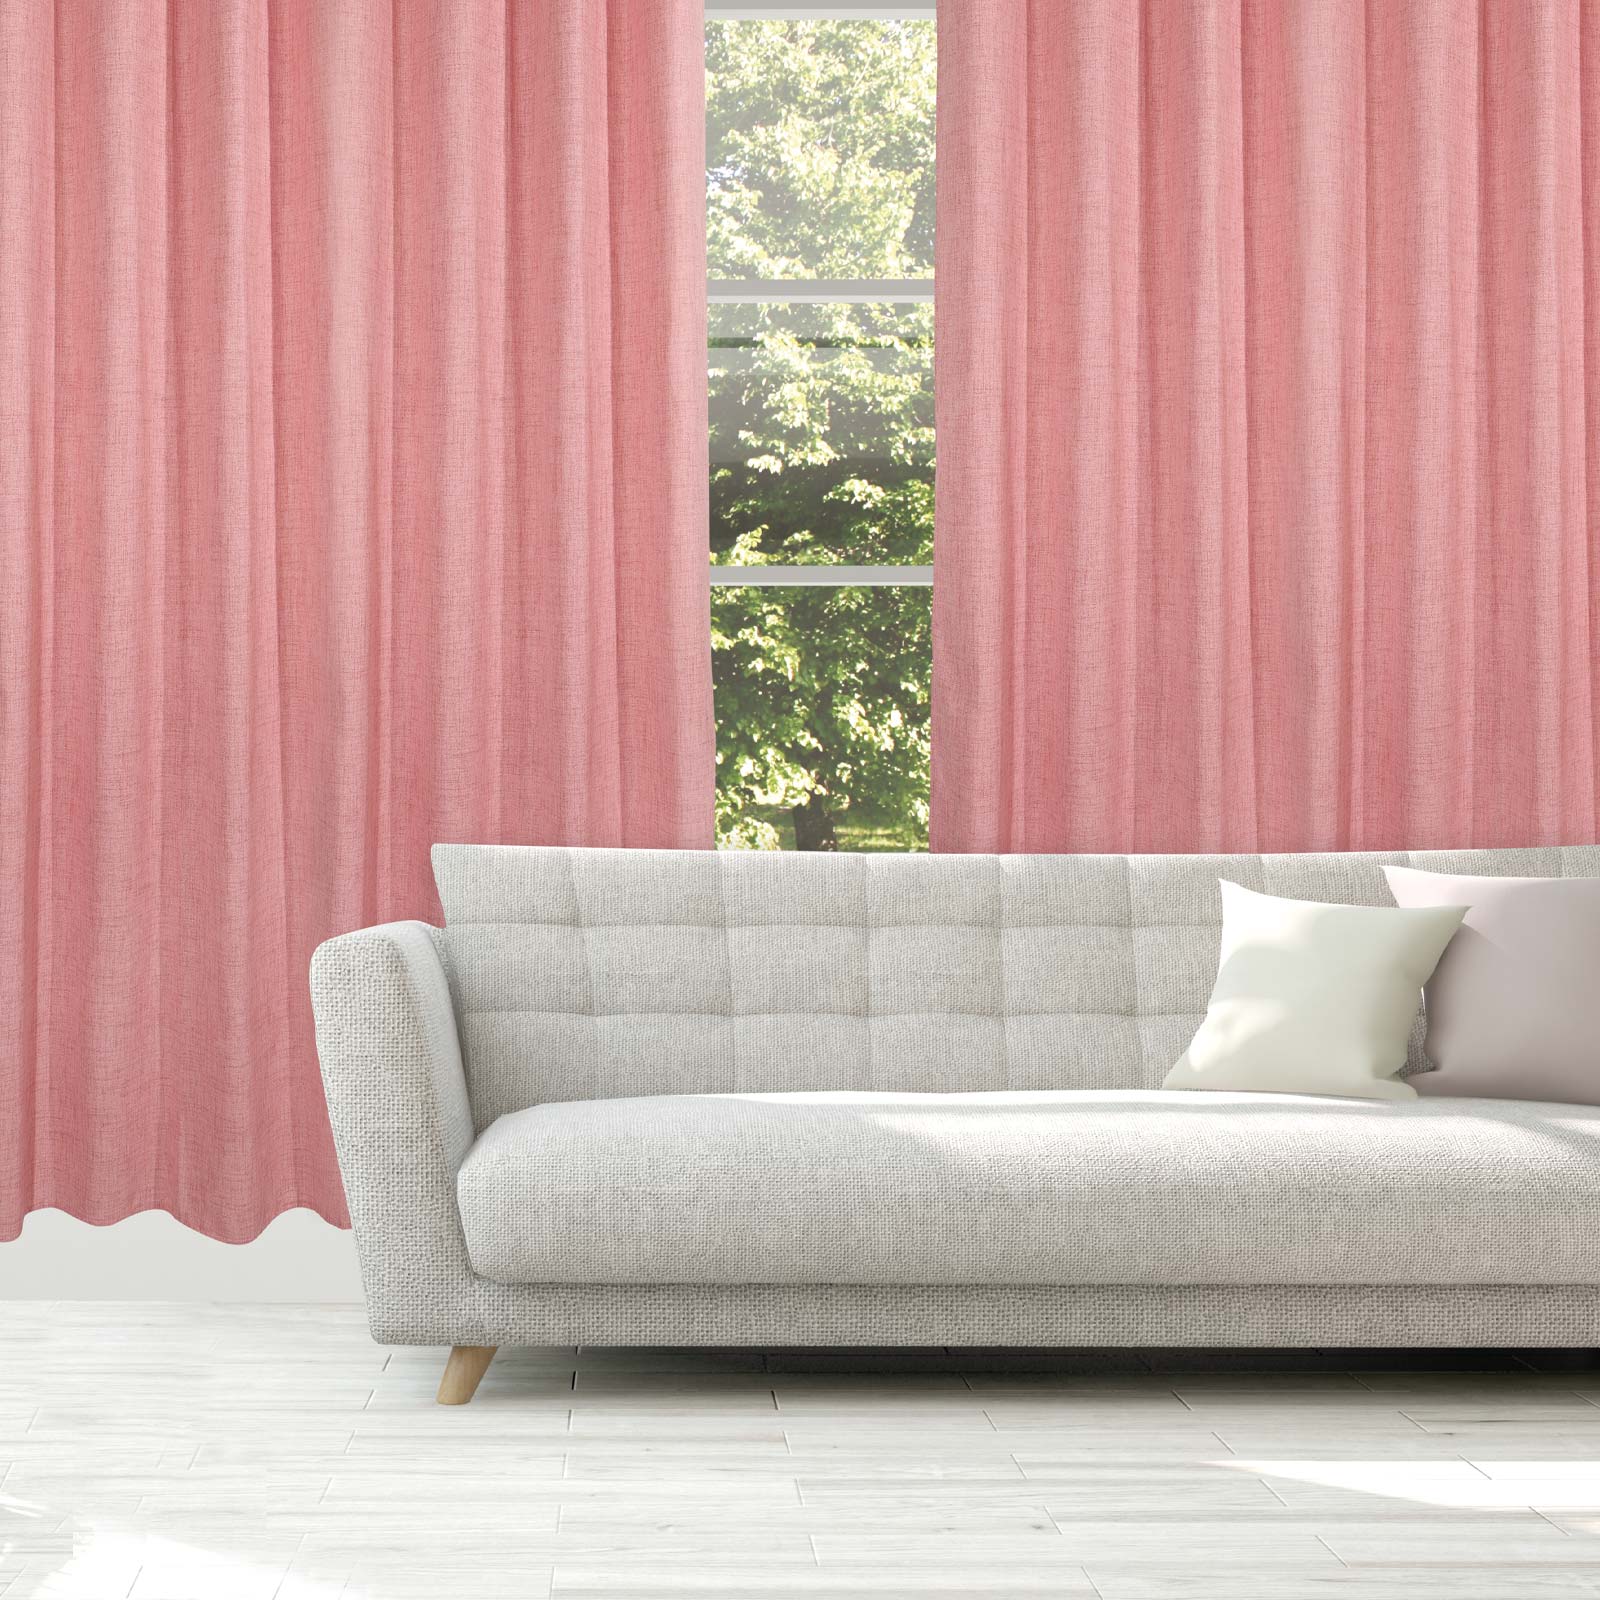 Κουρτίνα Μέτριας Σκίασης Με Τρουκς Polyester 140×270εκ. Curtain Line 2238 Ροδί Das Home (Ύφασμα: Polyester, Χρώμα: Ροδί) – Das Home – 420142702238